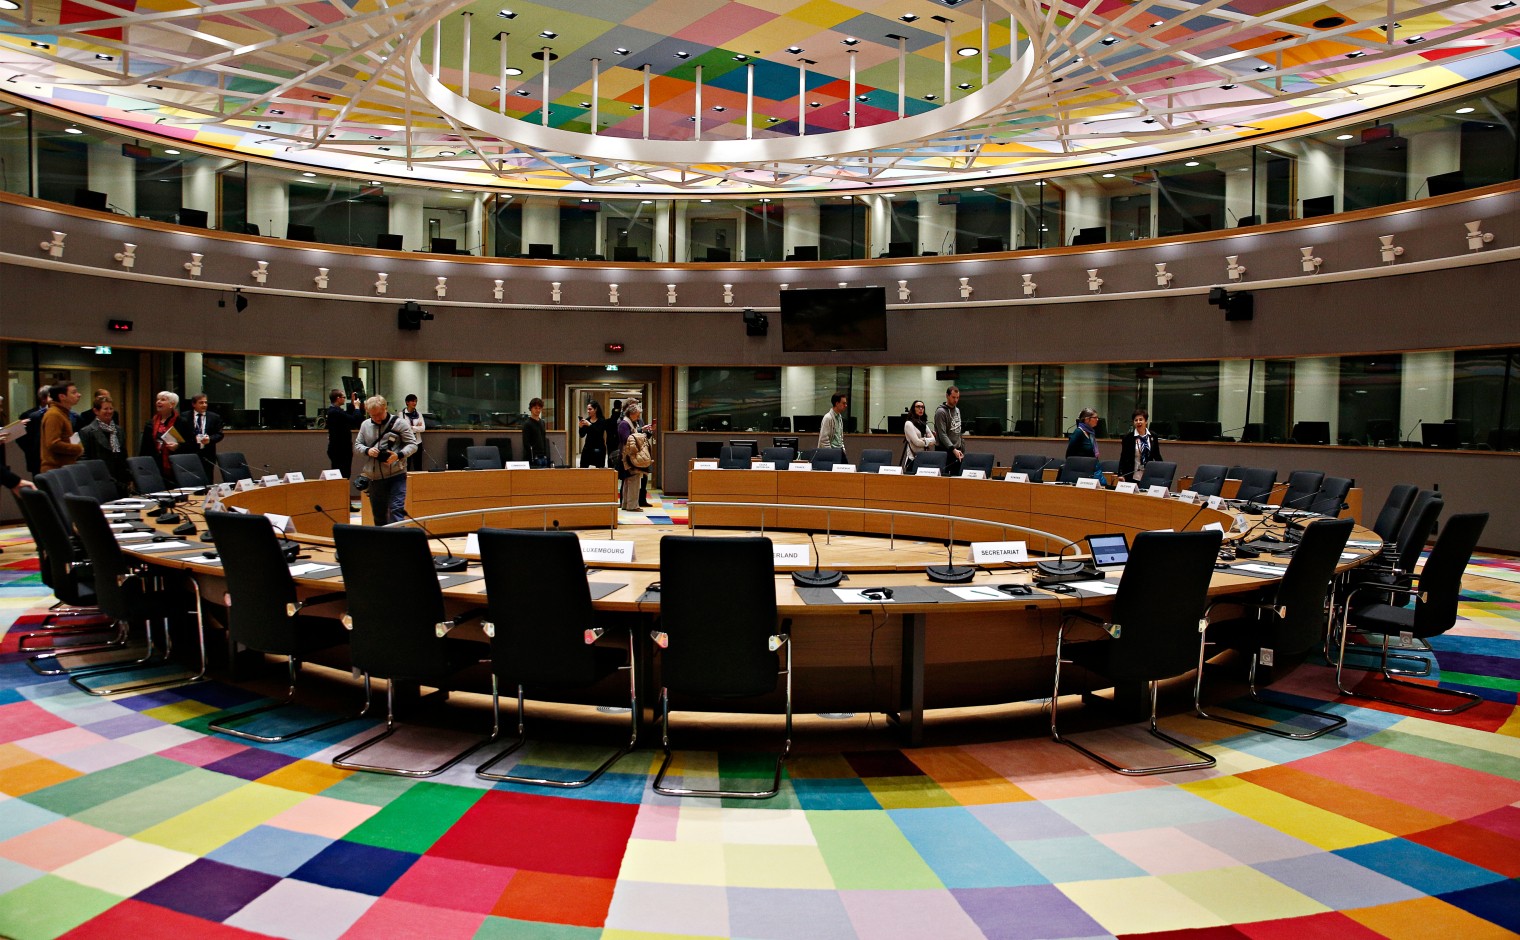 Plenaire zaal van de Europese Raad in Brussel.